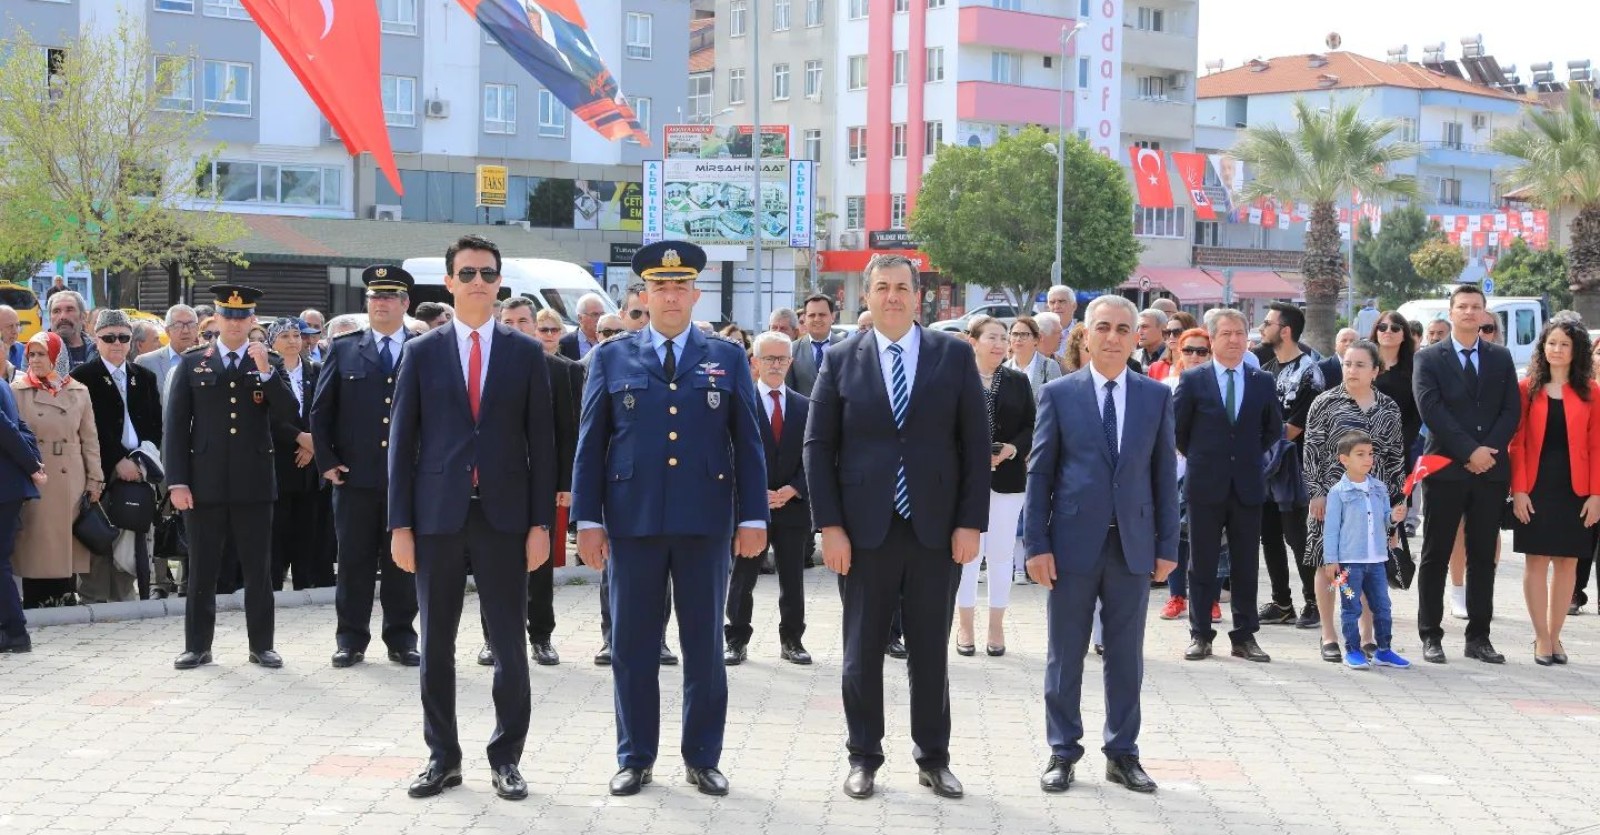 İlçemizde Ulusal Egemenlik ve Çocuk Bayramı’nın 103. Yıl Dönümü kutlamaları Cumhuriyet Meydanında Atatürk Anıtına çelenk sunma töreni ile başladı.